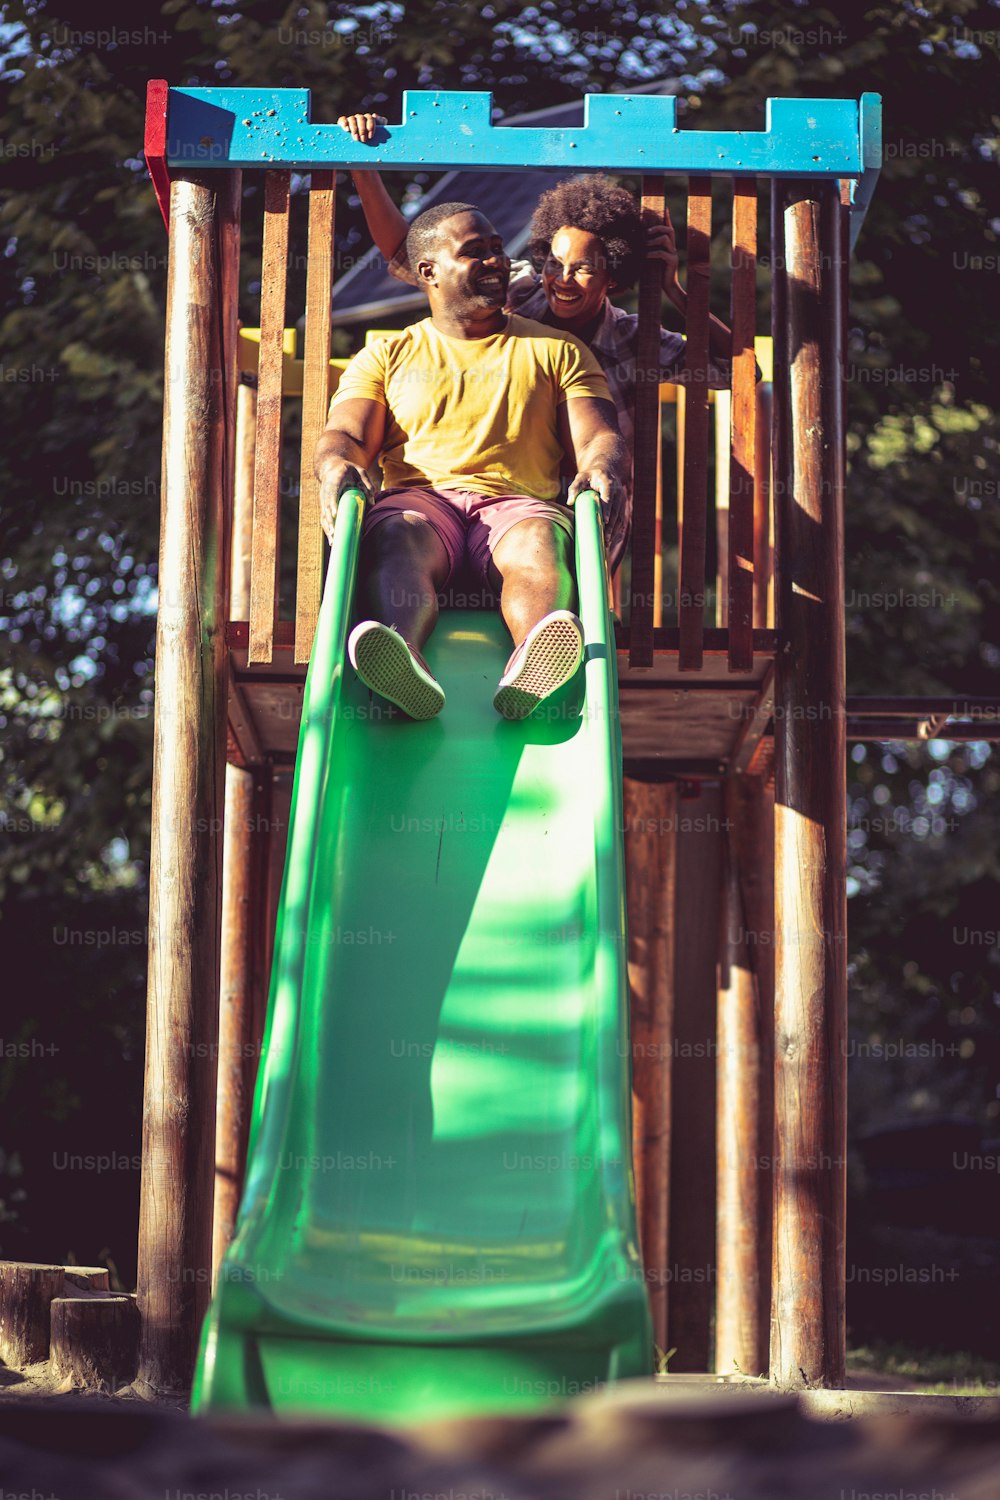 Casal afro-americano brincando no playground.